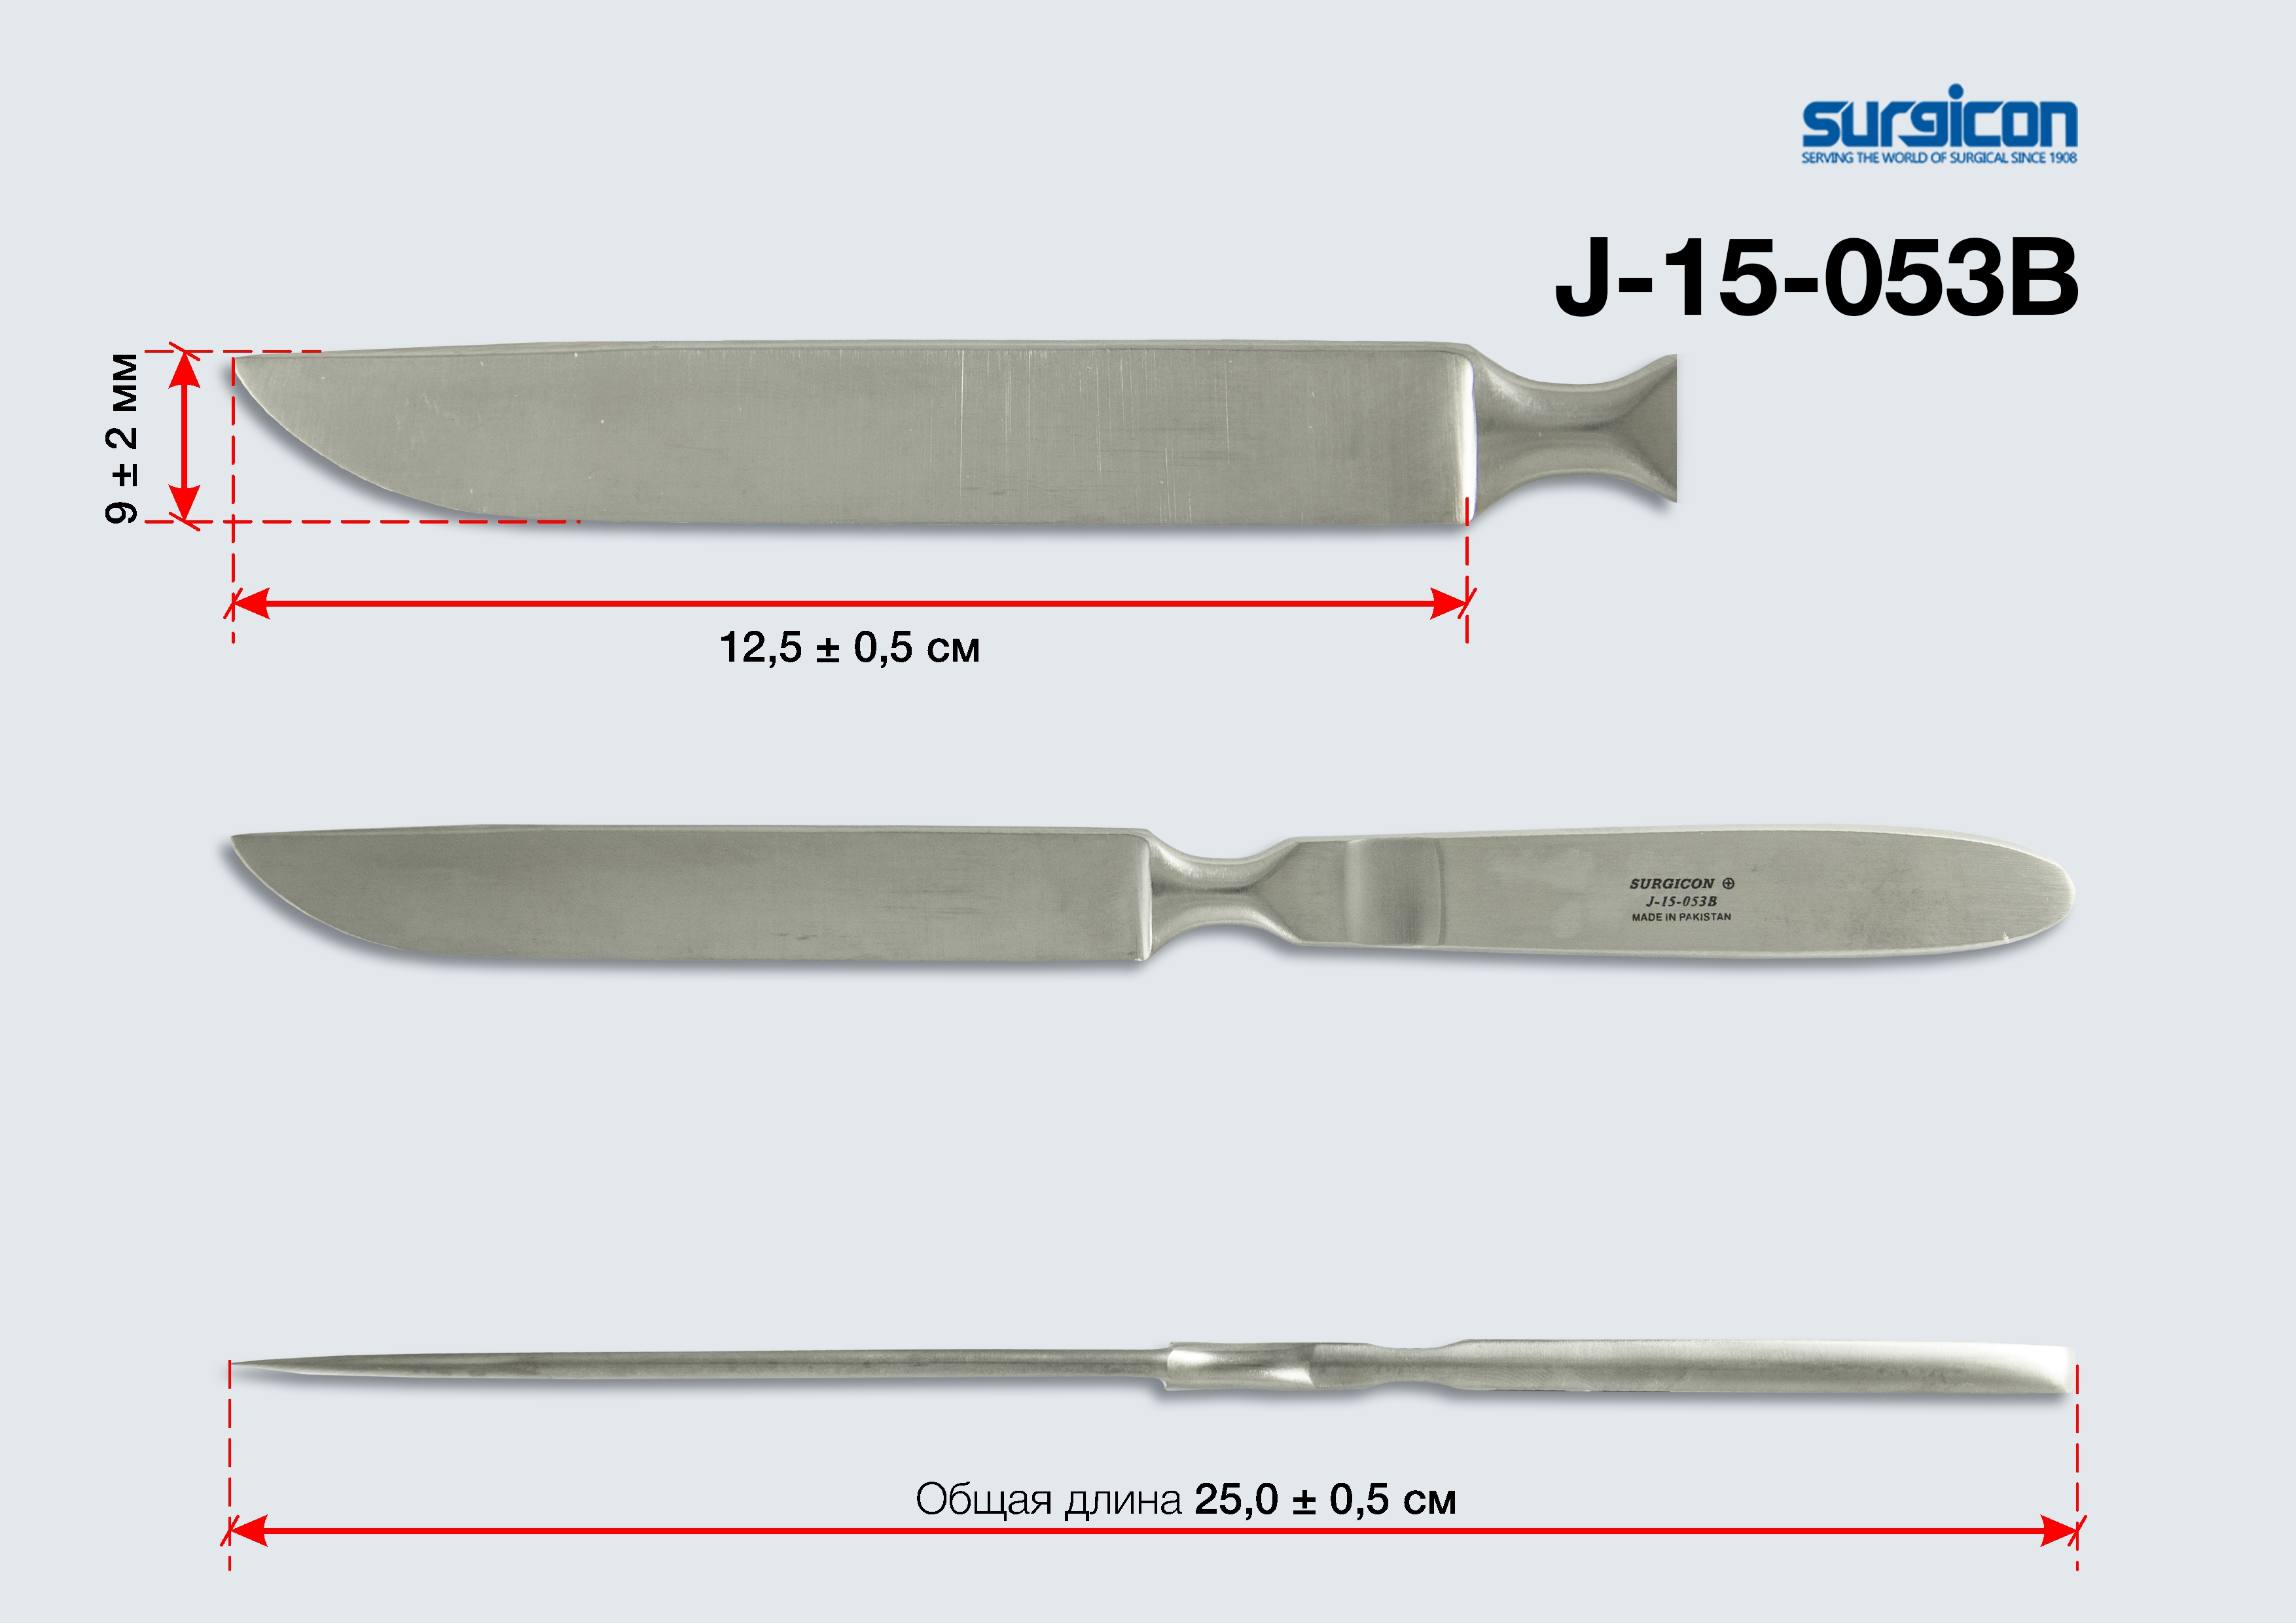 Тип 15 no 53. Нож ампутационный малый 250х120 (н-39s). Нож ампутационный малый НЛ 250х120 (н-39s). Нож ампутационный малый НЛ 250*120. Нож ампутационный малый НЛ-Миз-в н-39, 250x120 мм.